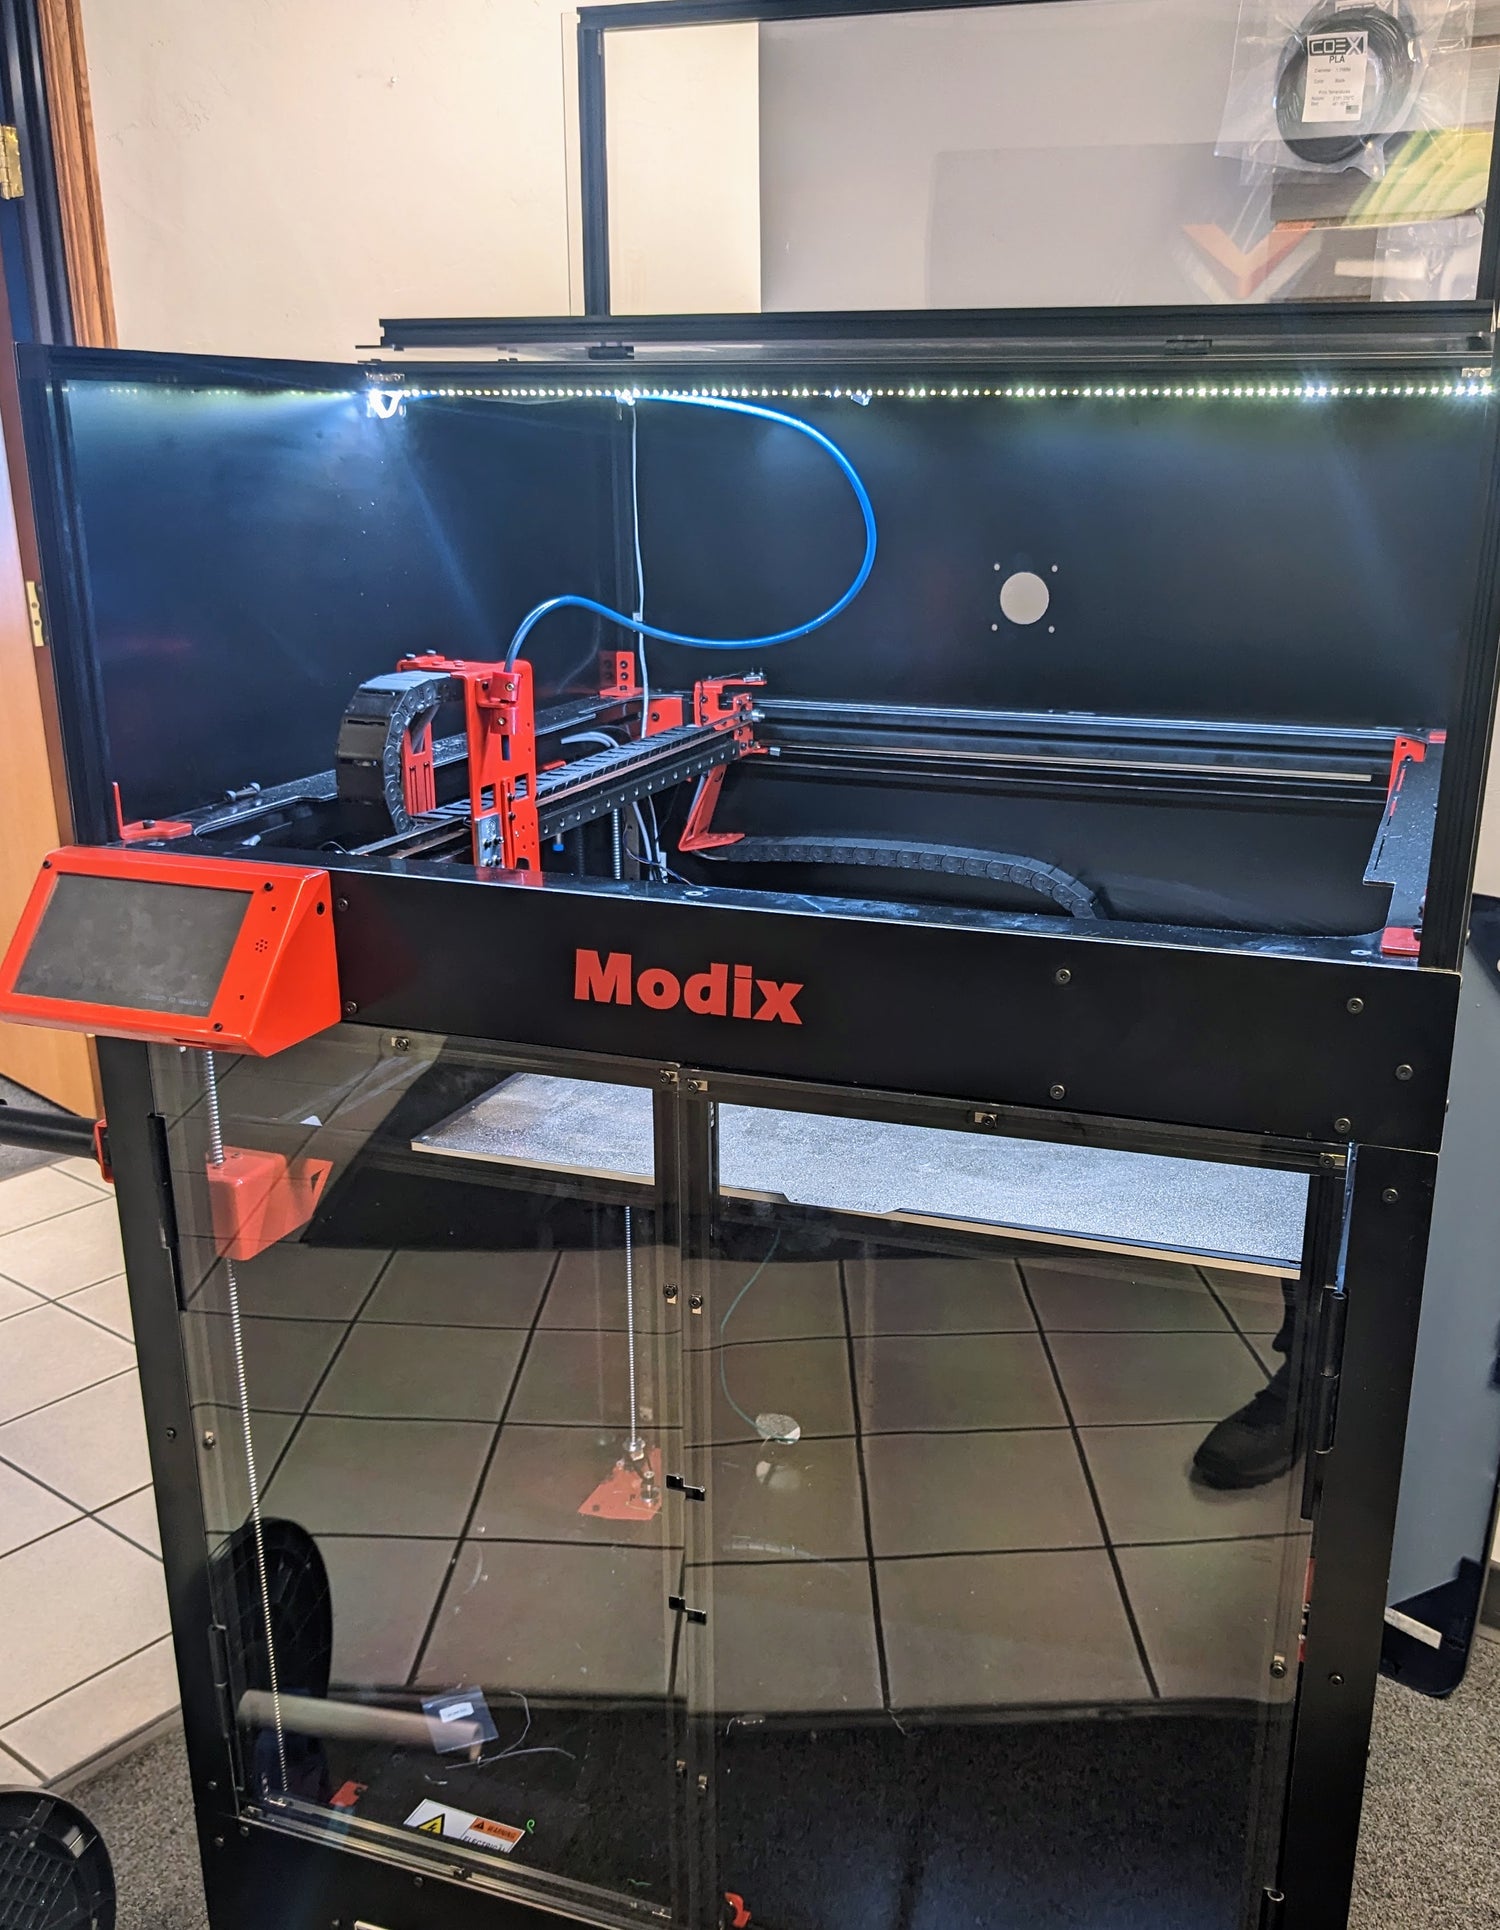 A Modix Big 60 industrial 3D printer